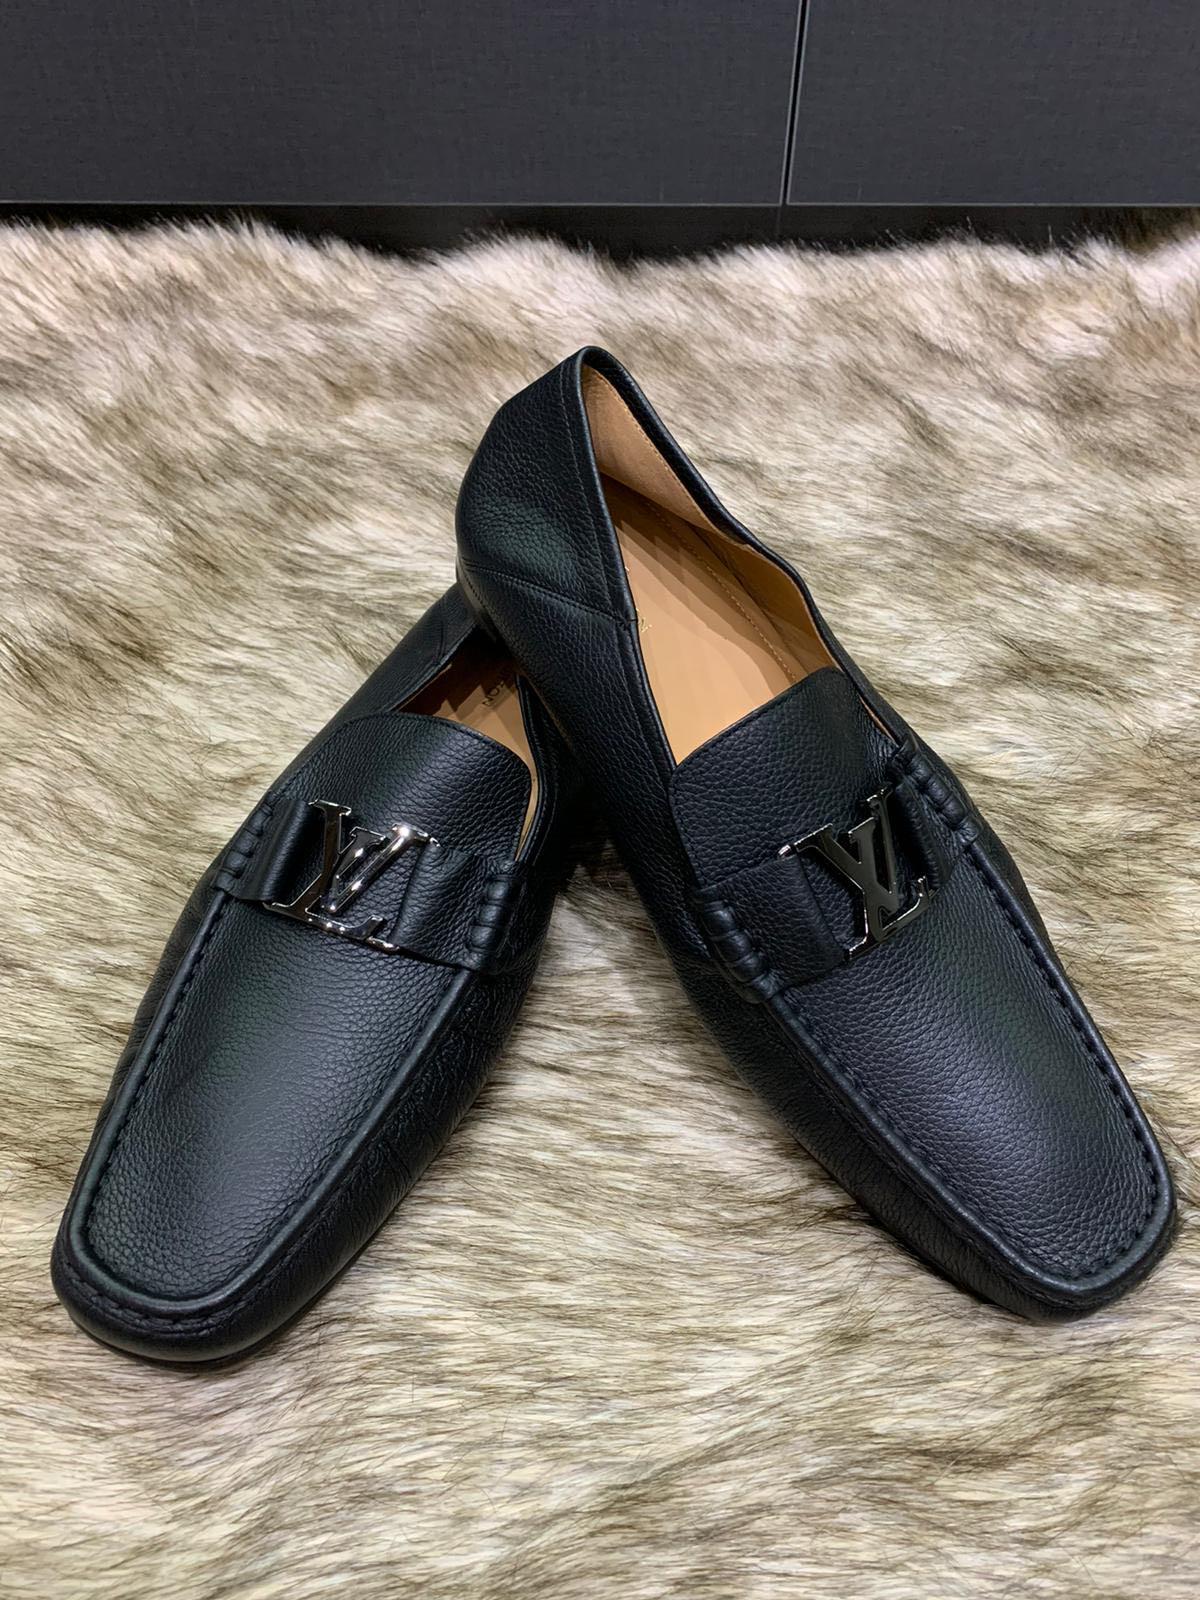 Louis Vuitton loafer shoes  Louis vuitton men shoes, Lv men shoes